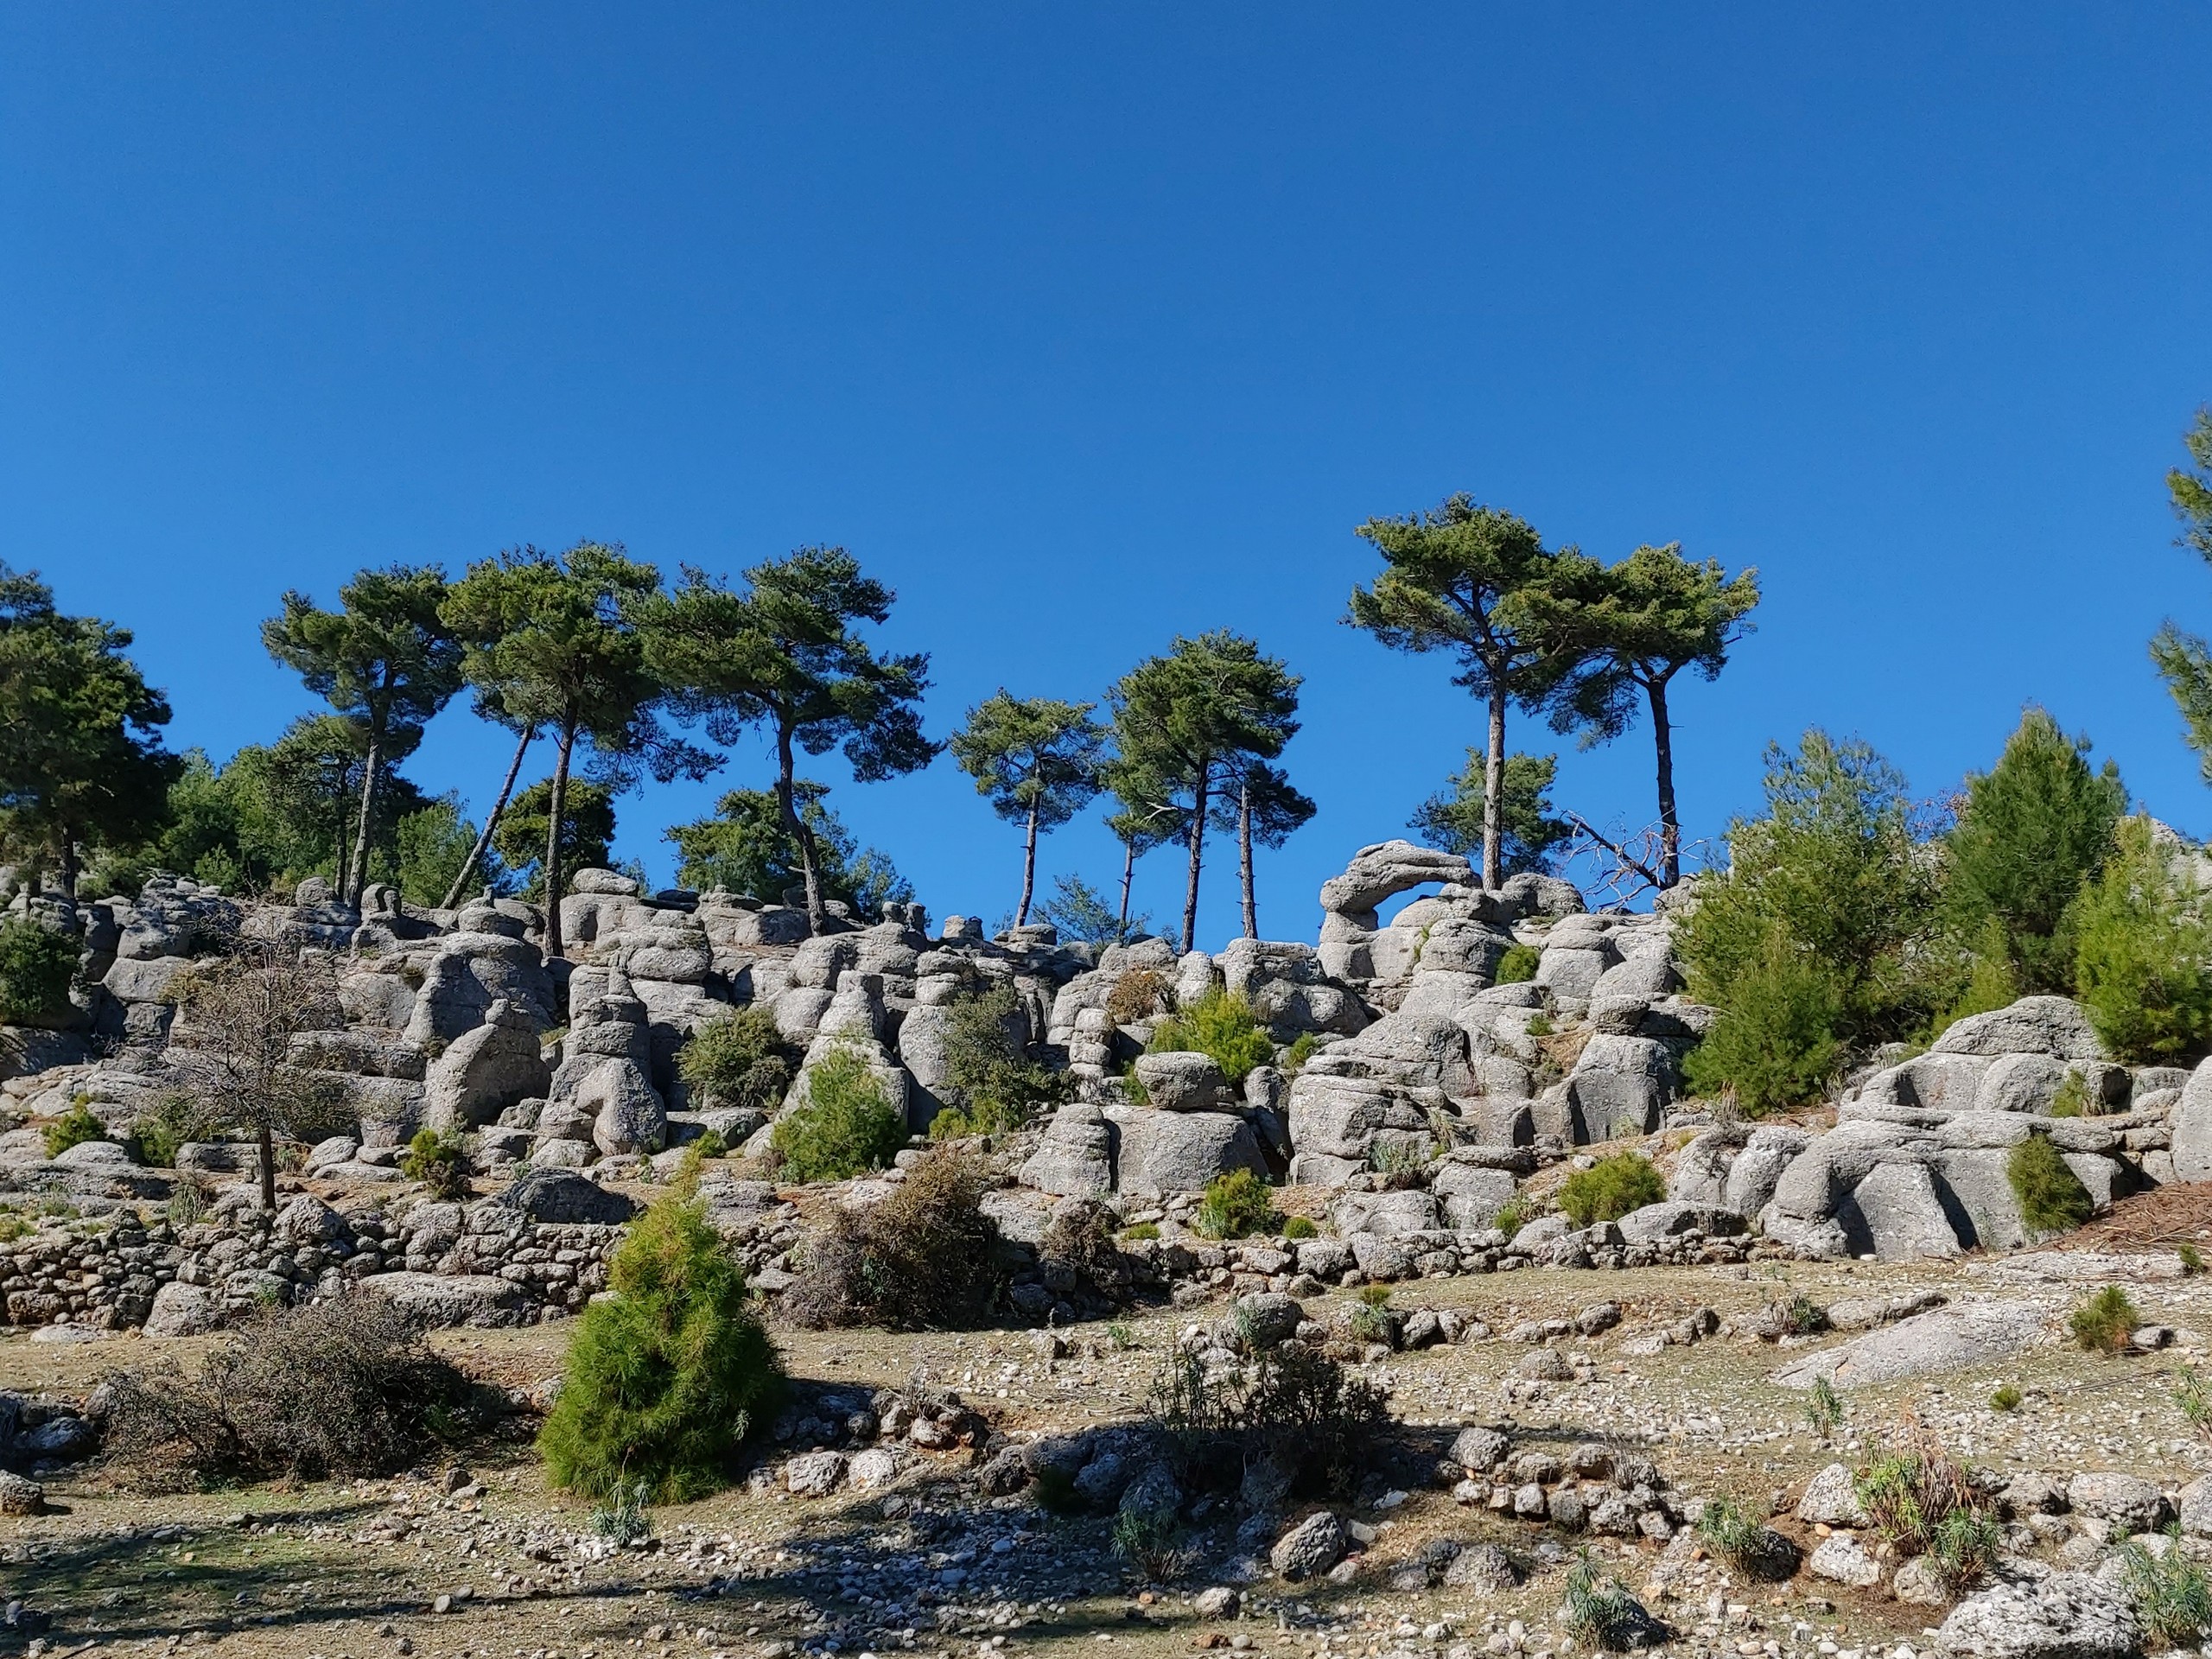 St Paul landscape seen in Turkey